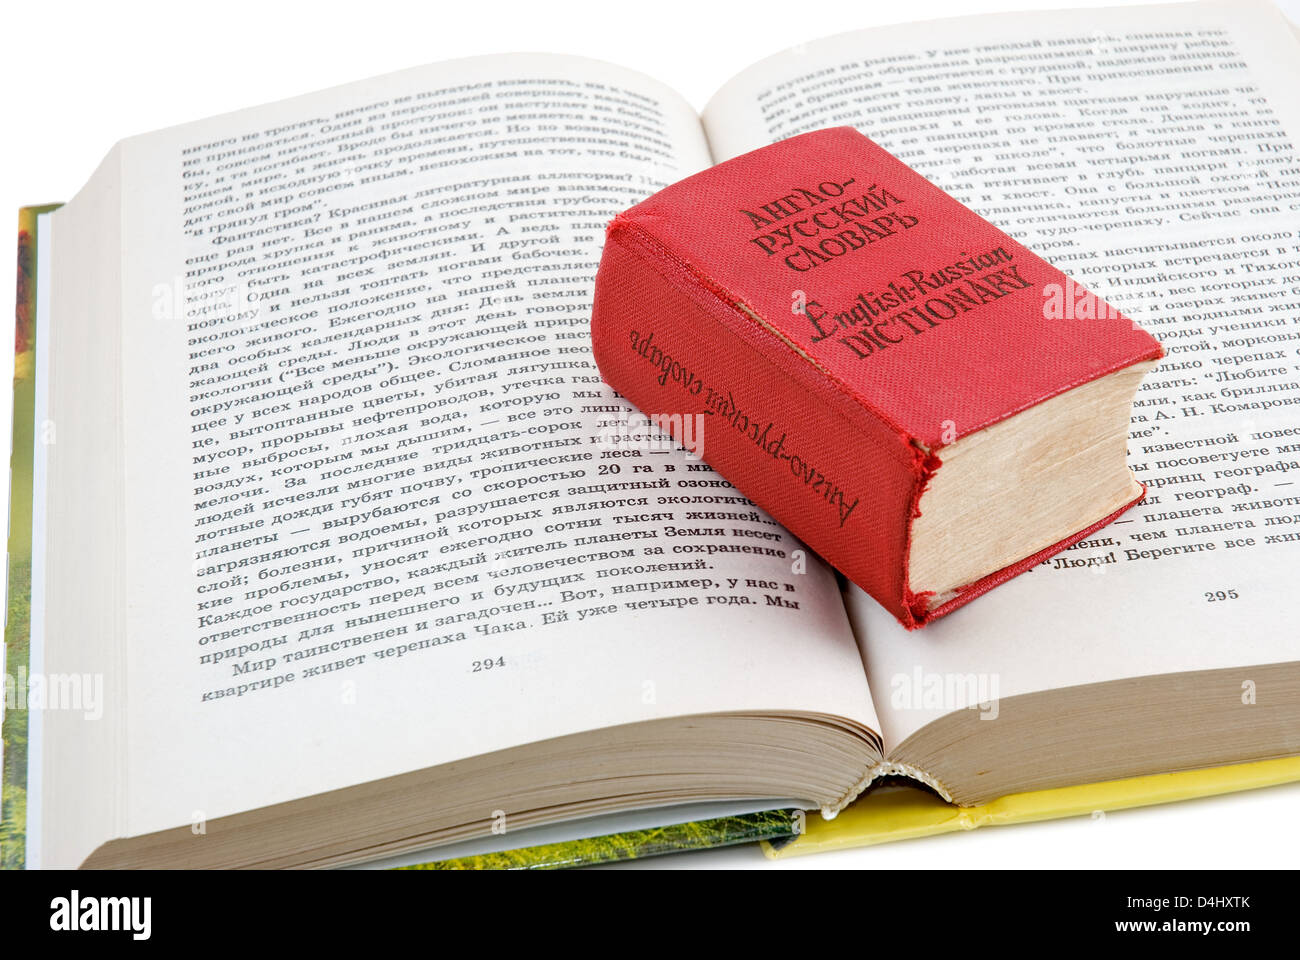 Das kleine rote Wörterbuch legt auf das geöffnete Buch Stockfoto